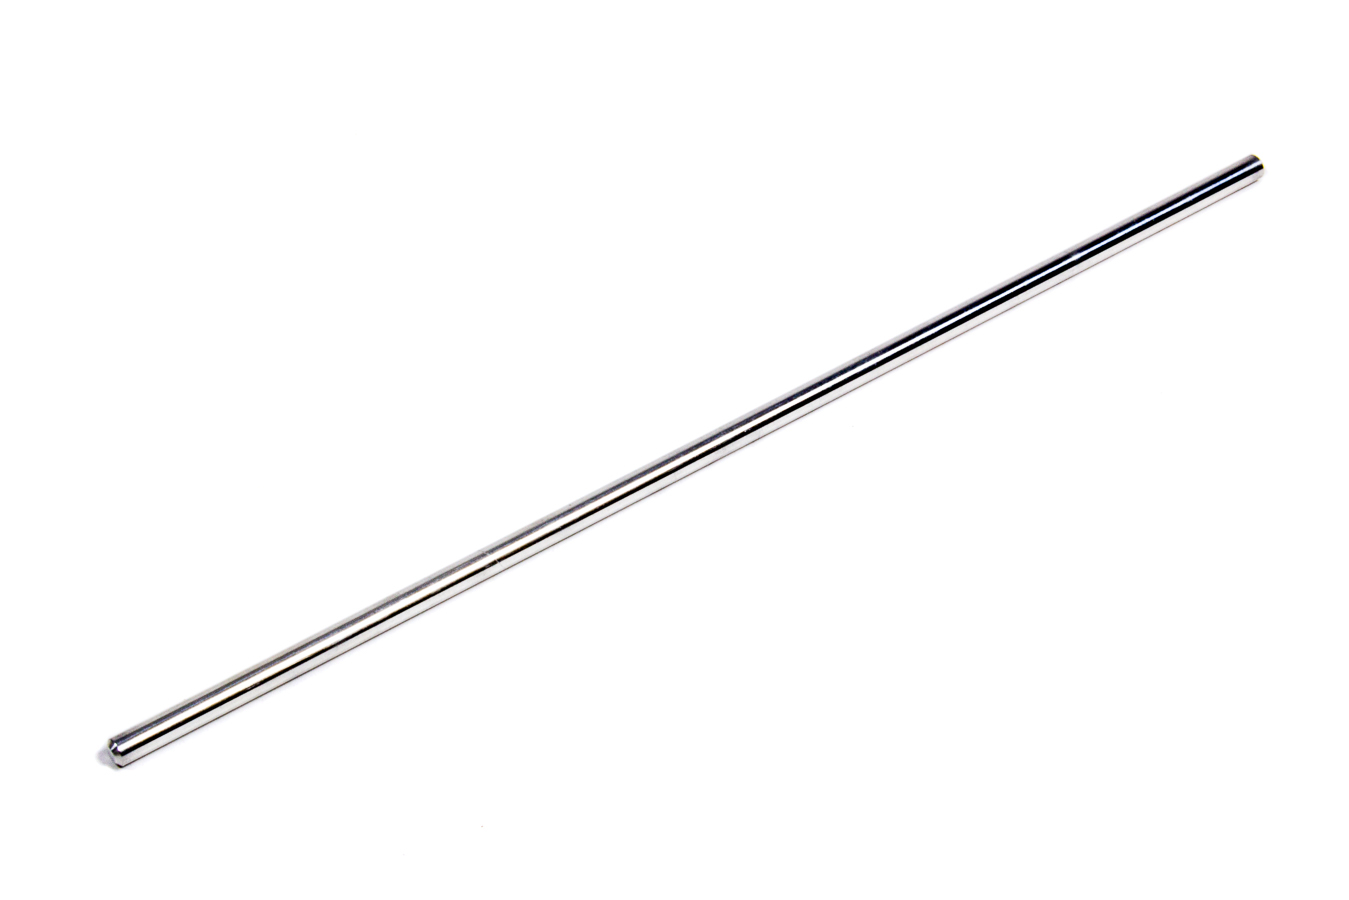 Fox Factory 210-92-087 Shock Metering Rod, 7.1 in Travel Adjustable Shocks, Each